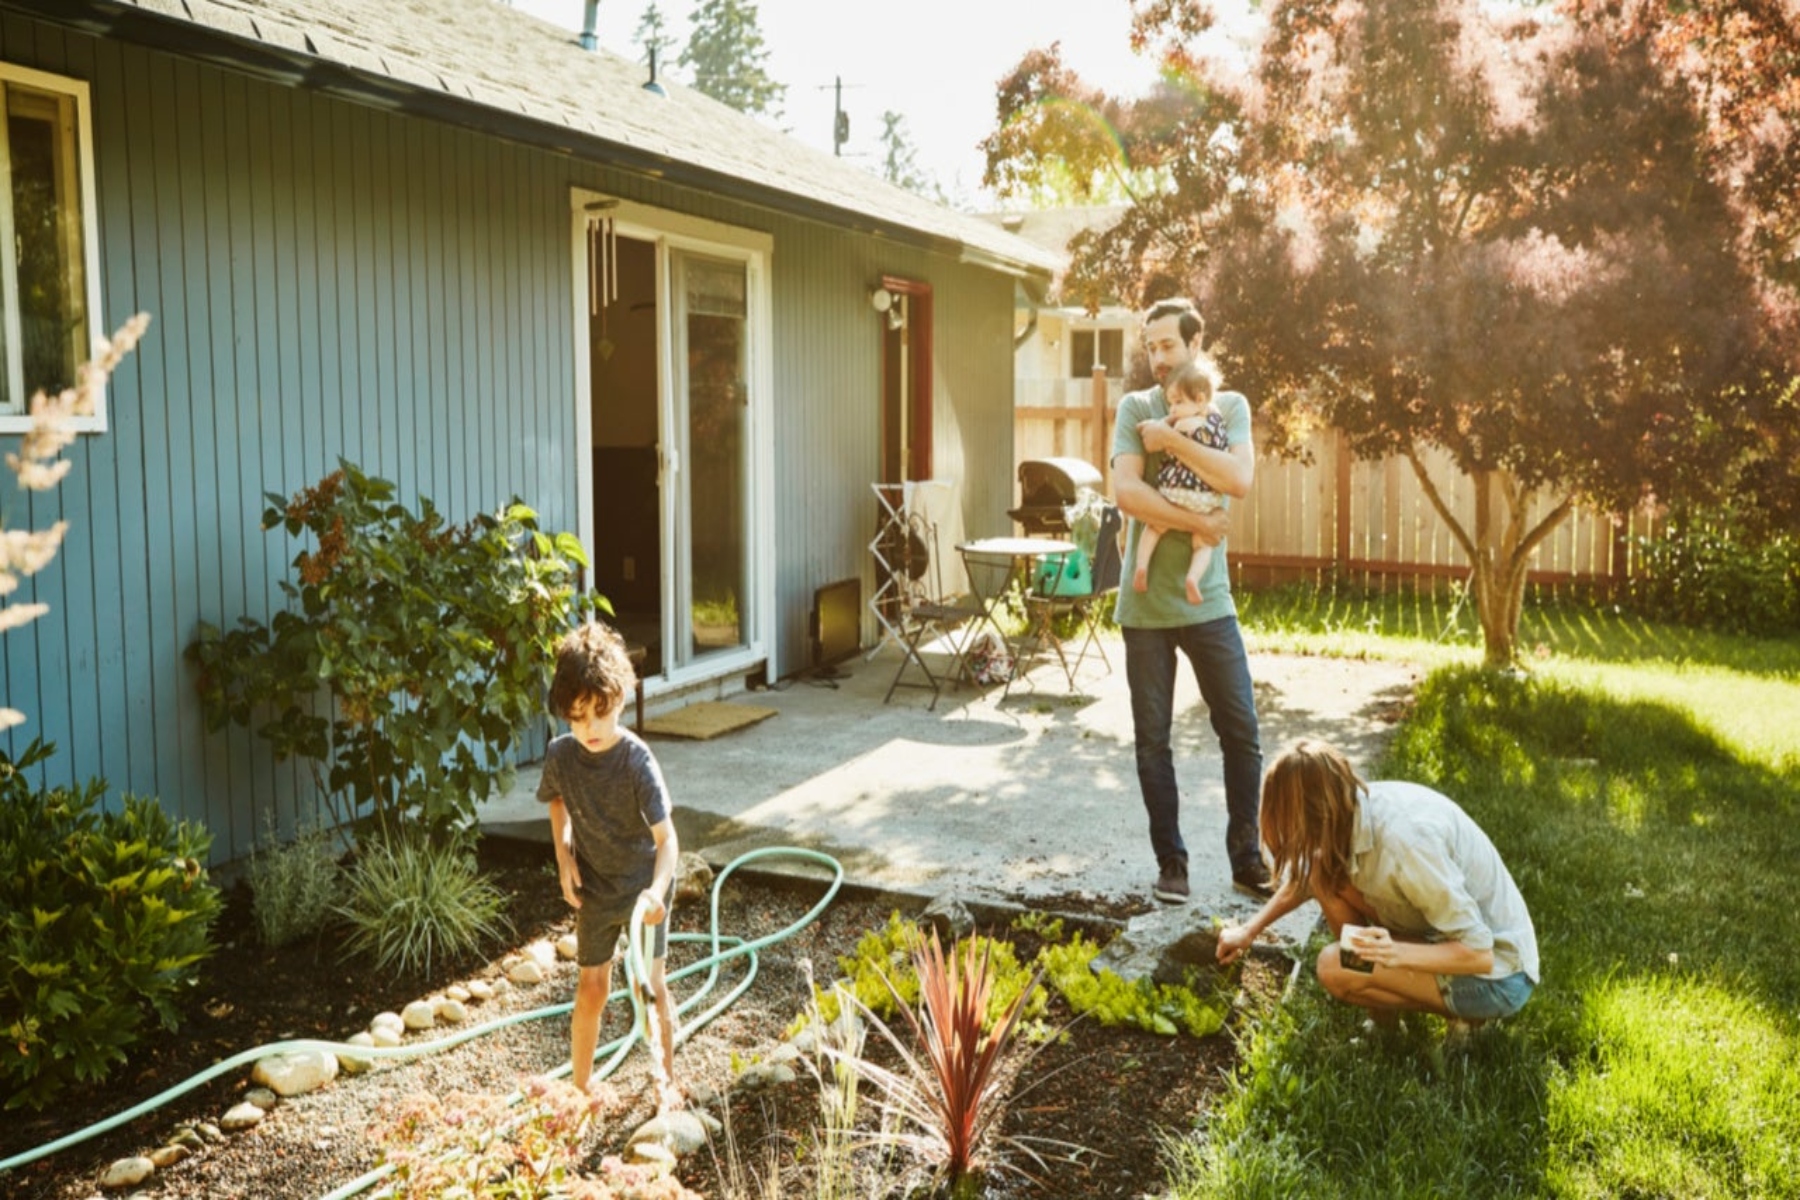 Σπίτι: 3 οικιακοί κίνδυνοι για την υγεία σας και πώς να τους αποφύγετε